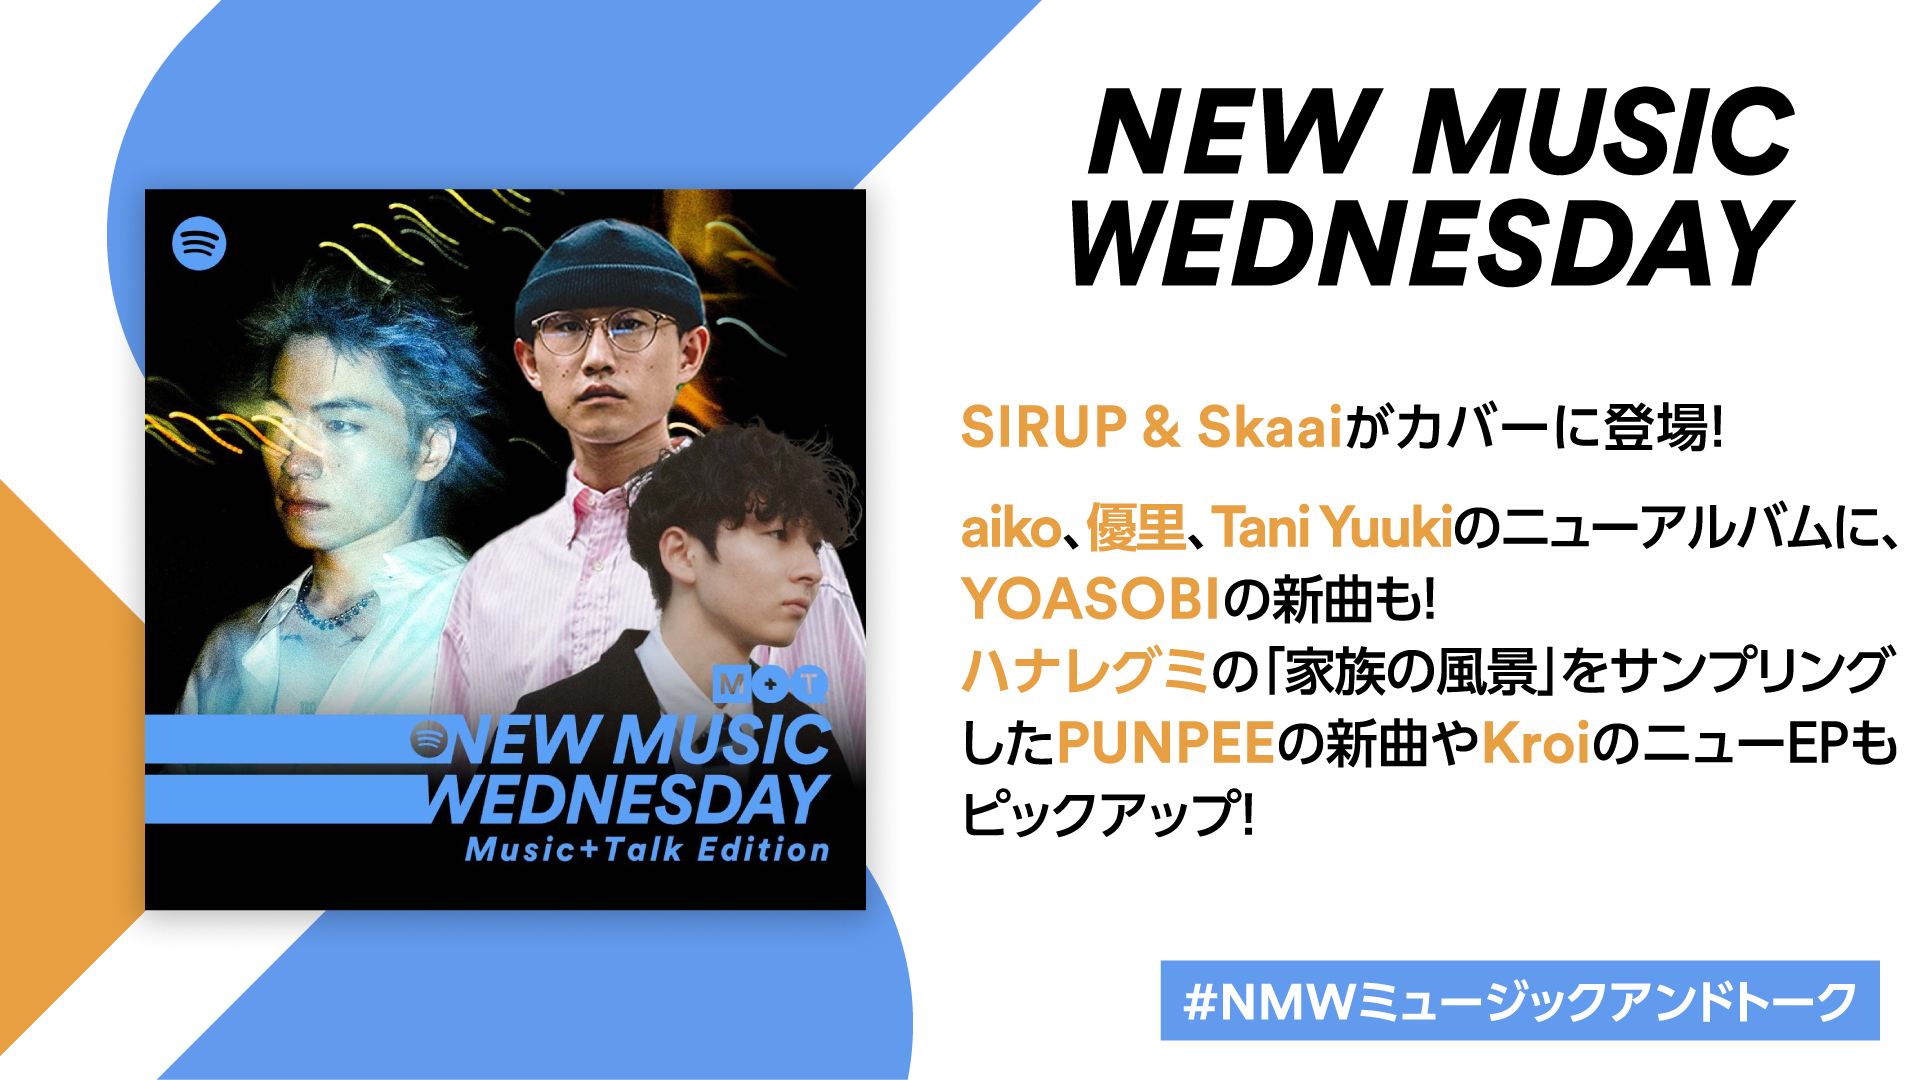 『New Music Wednesday』